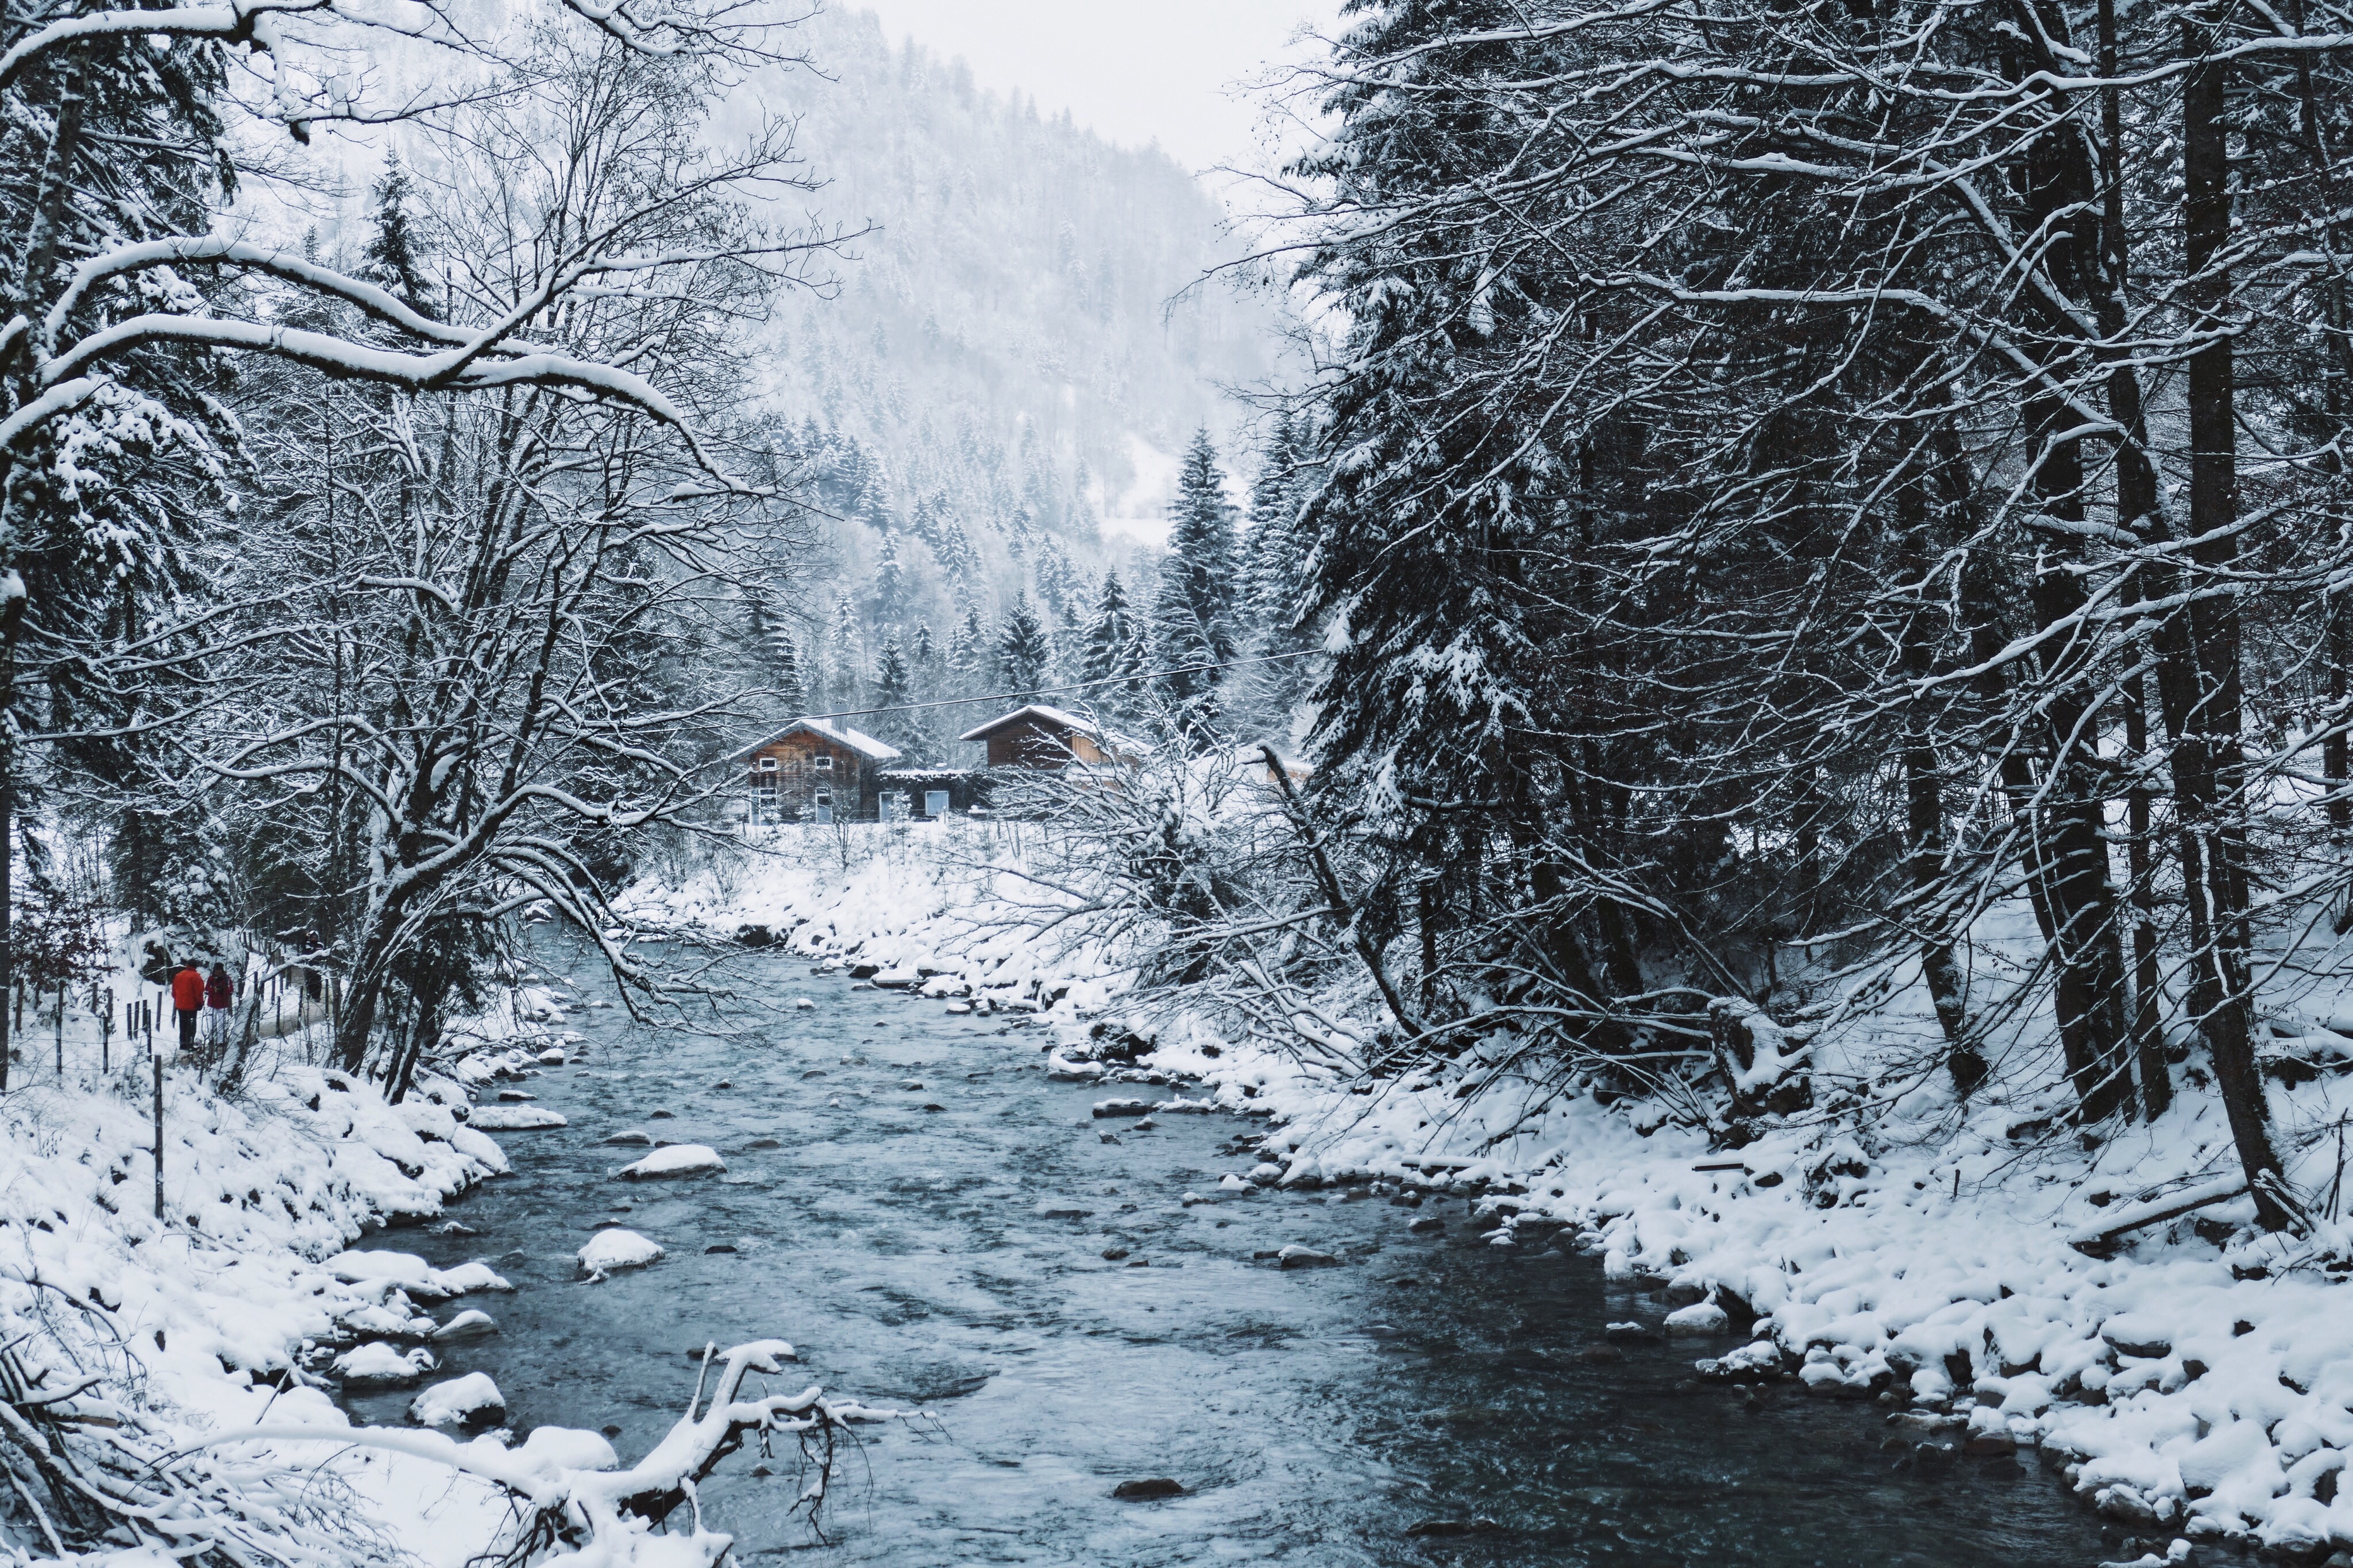 Klamm Ausflüge in Bayern, Deutschlang Kurztrip Highlights, Wandern Natur winter 